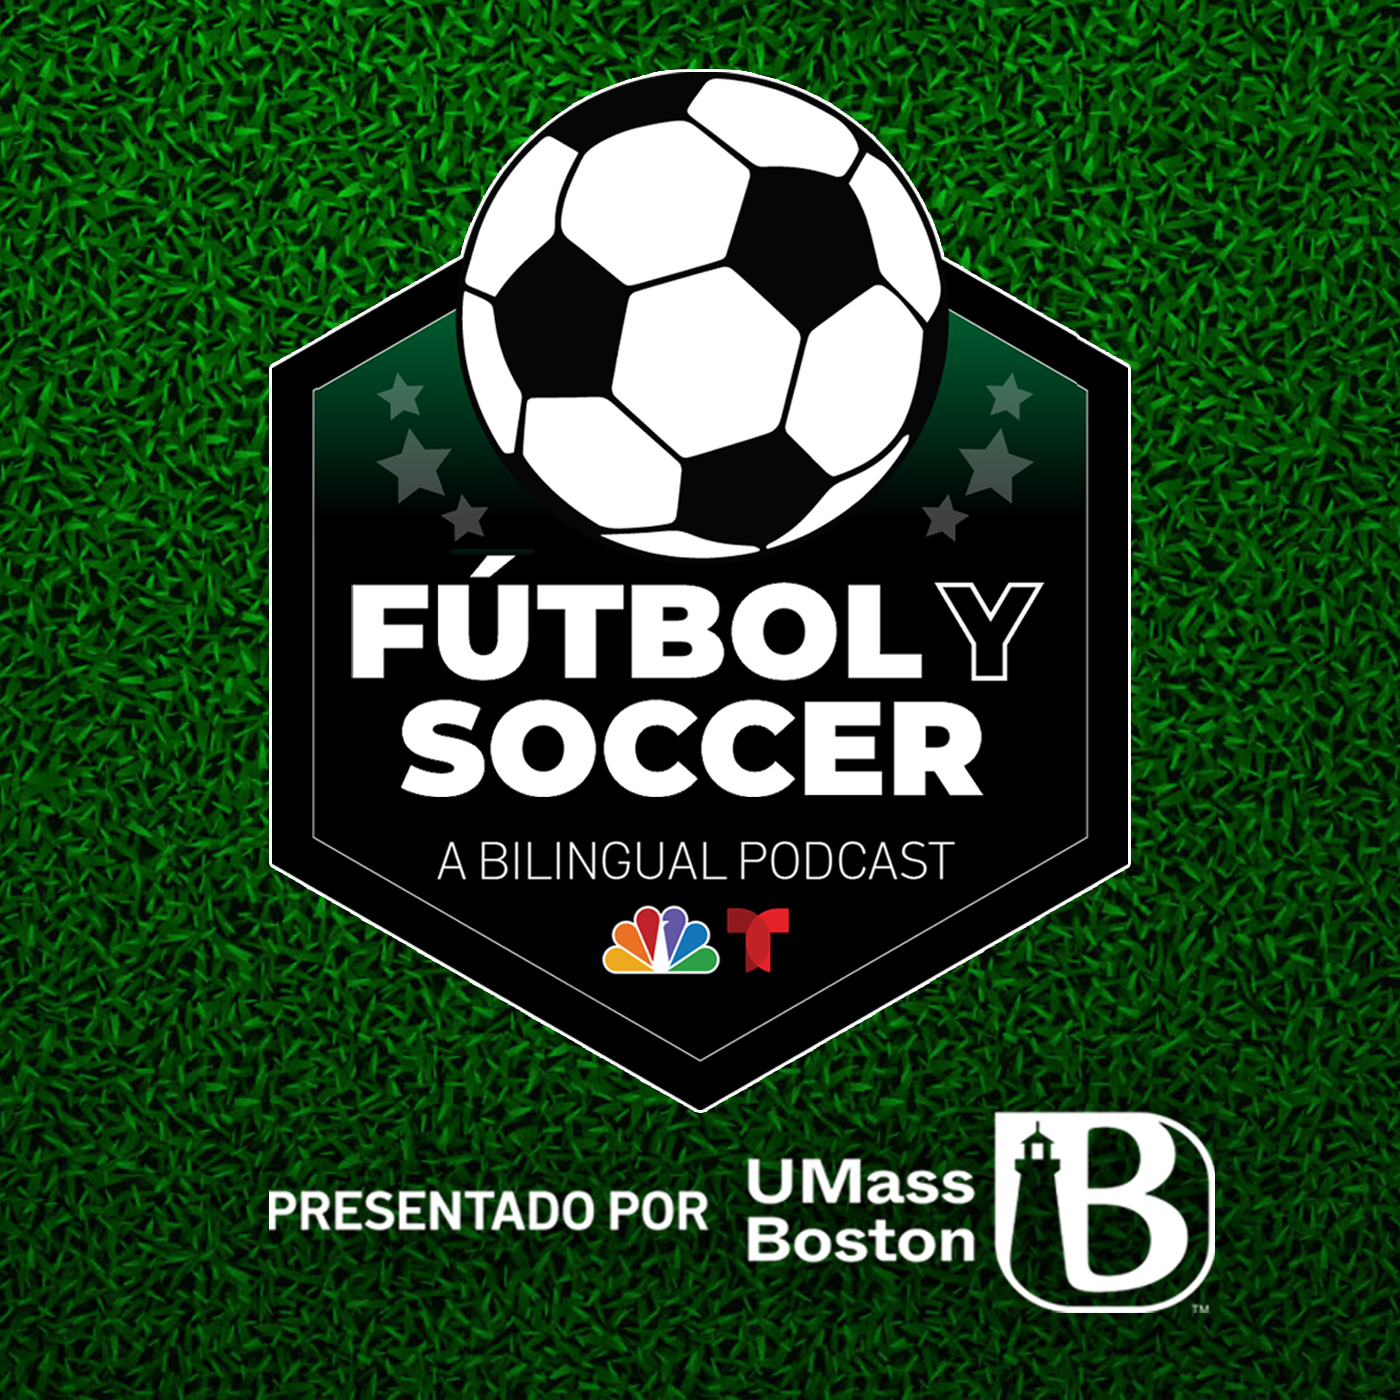 Fútbol y Soccer: A Bilingual Football/Soccer Podcast